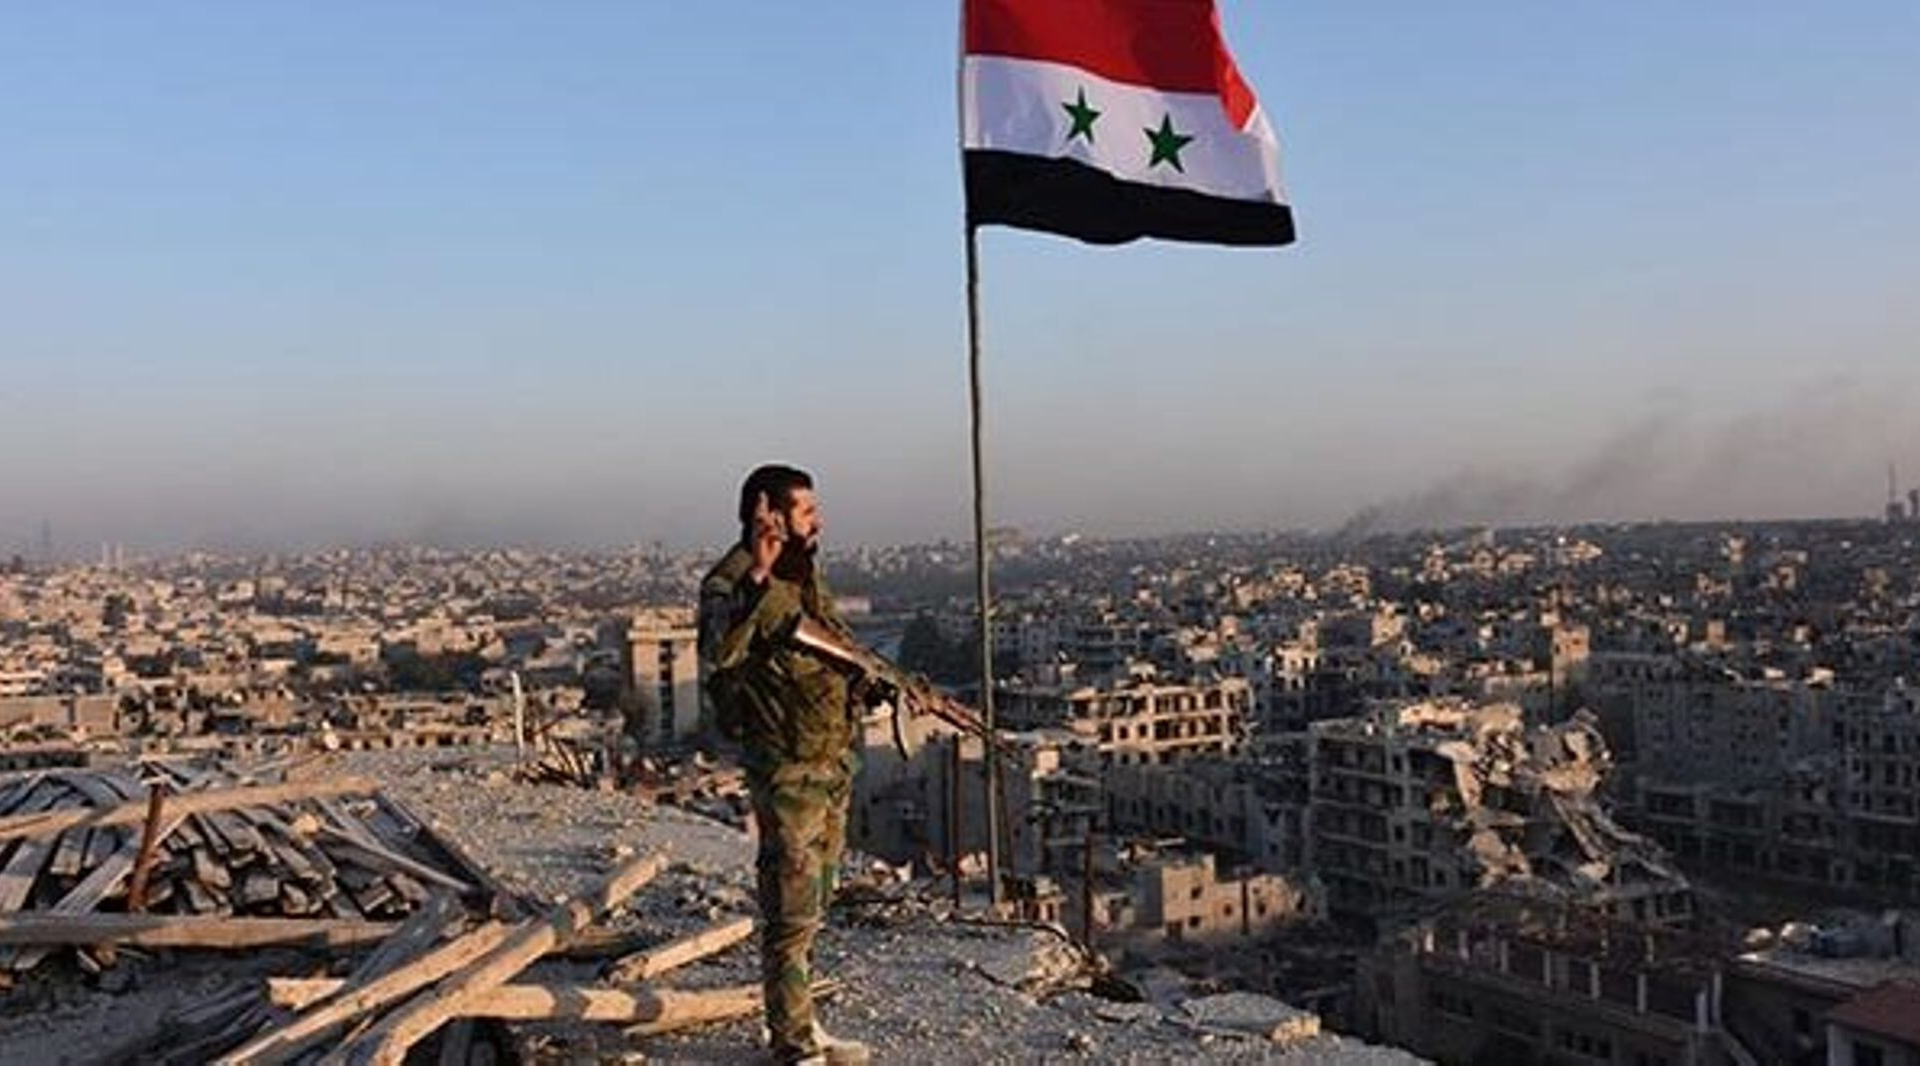 Suriye Anayasa Komitesi 30 Ekim'de toplanacak: Müdahale olursa askıya alırız